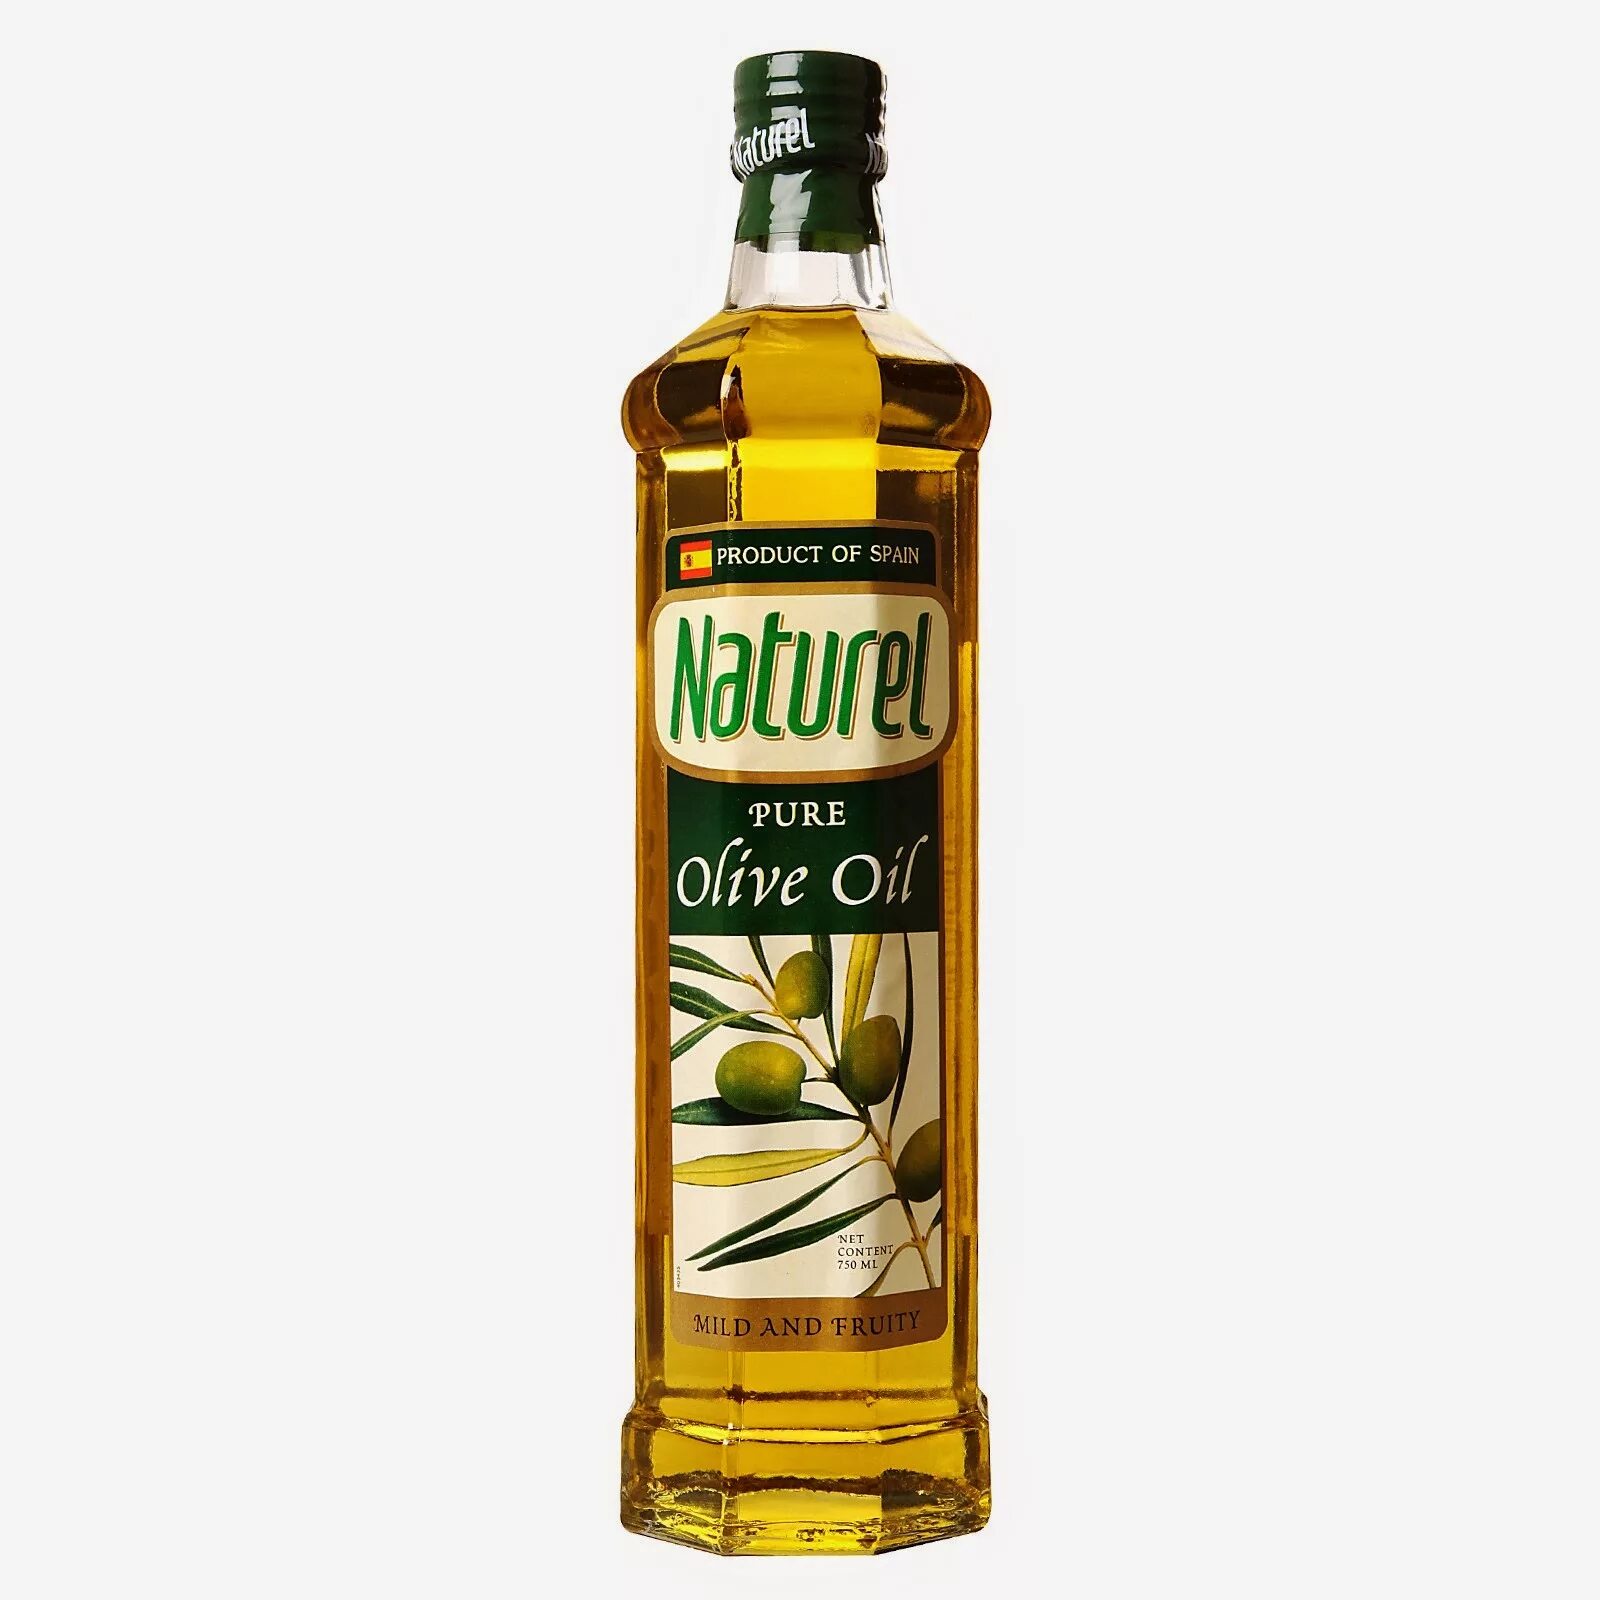 Масло оливковое Pure Olive Oil. Abril Pure Olive Oil оливковое масло. Extra Virgin Olive Oil. Детское оливковое масло. Оливковое масло высшего качества